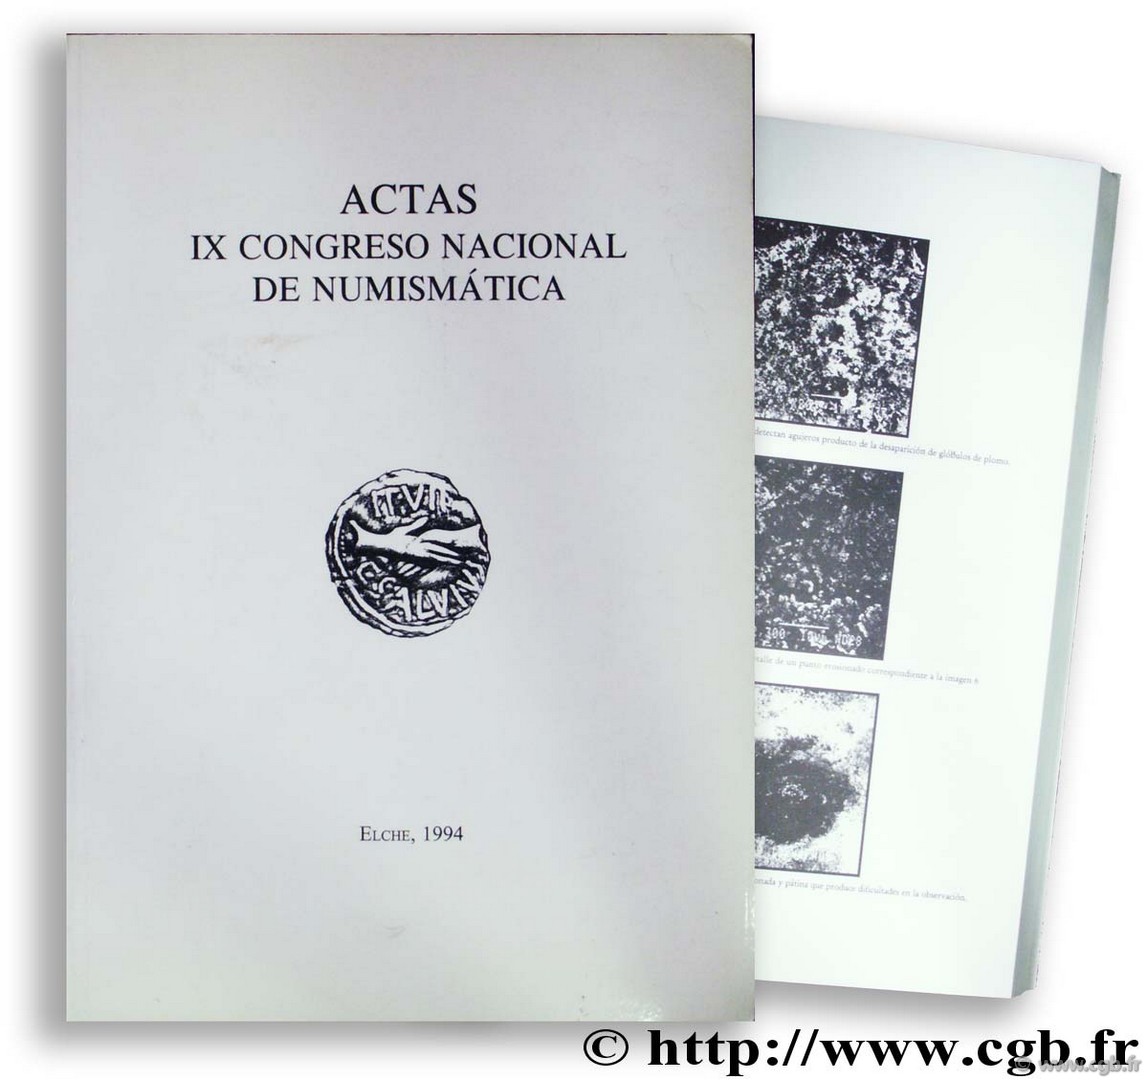 IX Congreso Nacional de Numismatica. Actas 